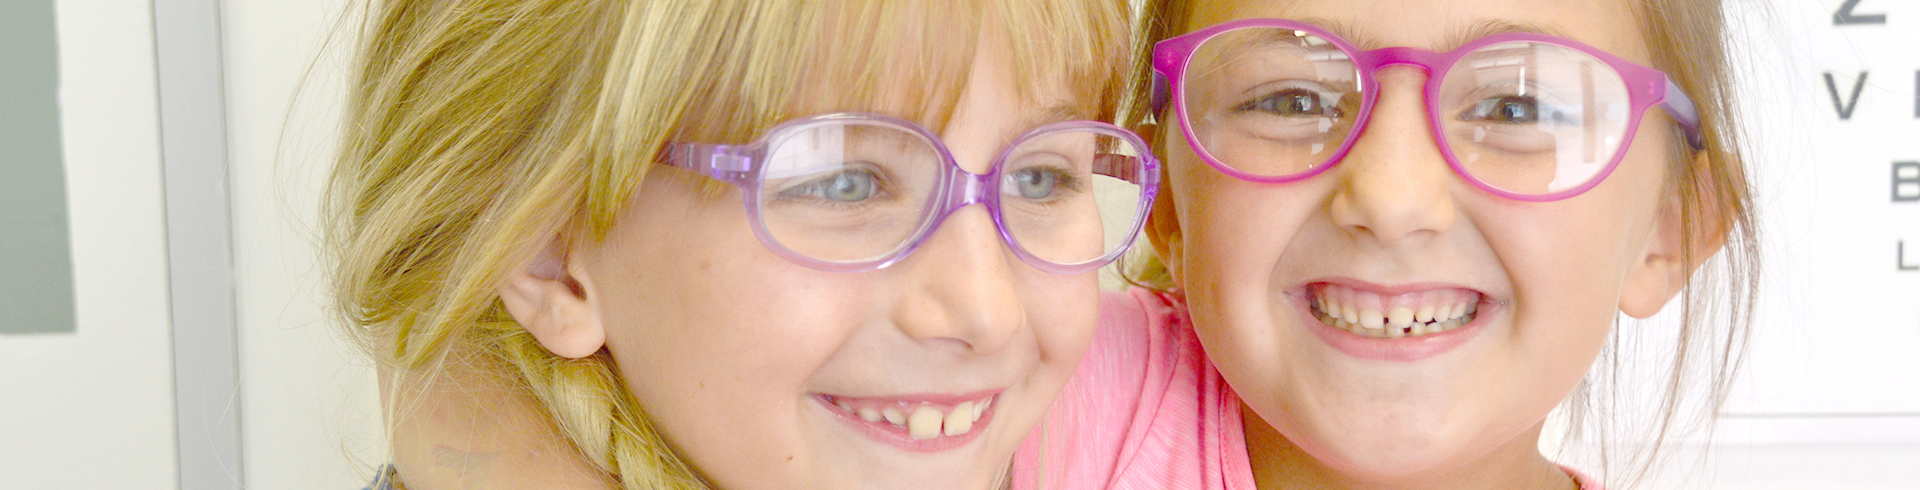 Occhiali da vista bambino - occhiali sole bambina - ETM CENTRO VISIONE